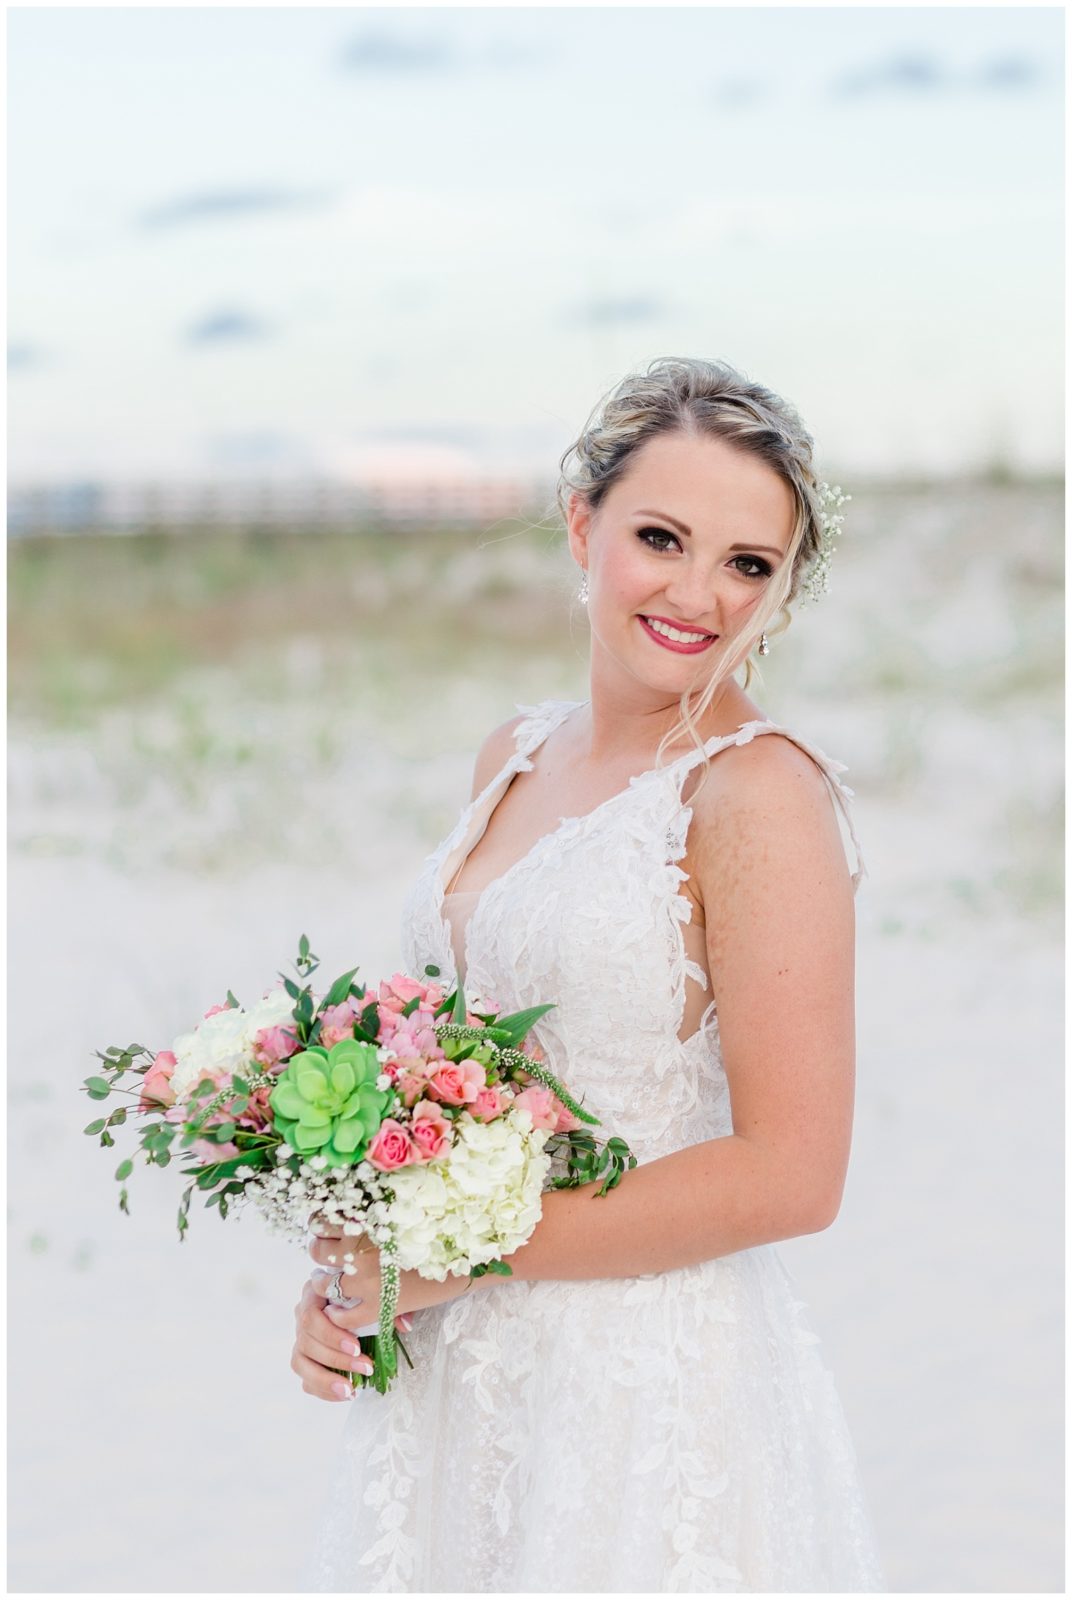 An Orange Beach Destination Wedding | Haley and Jared ...